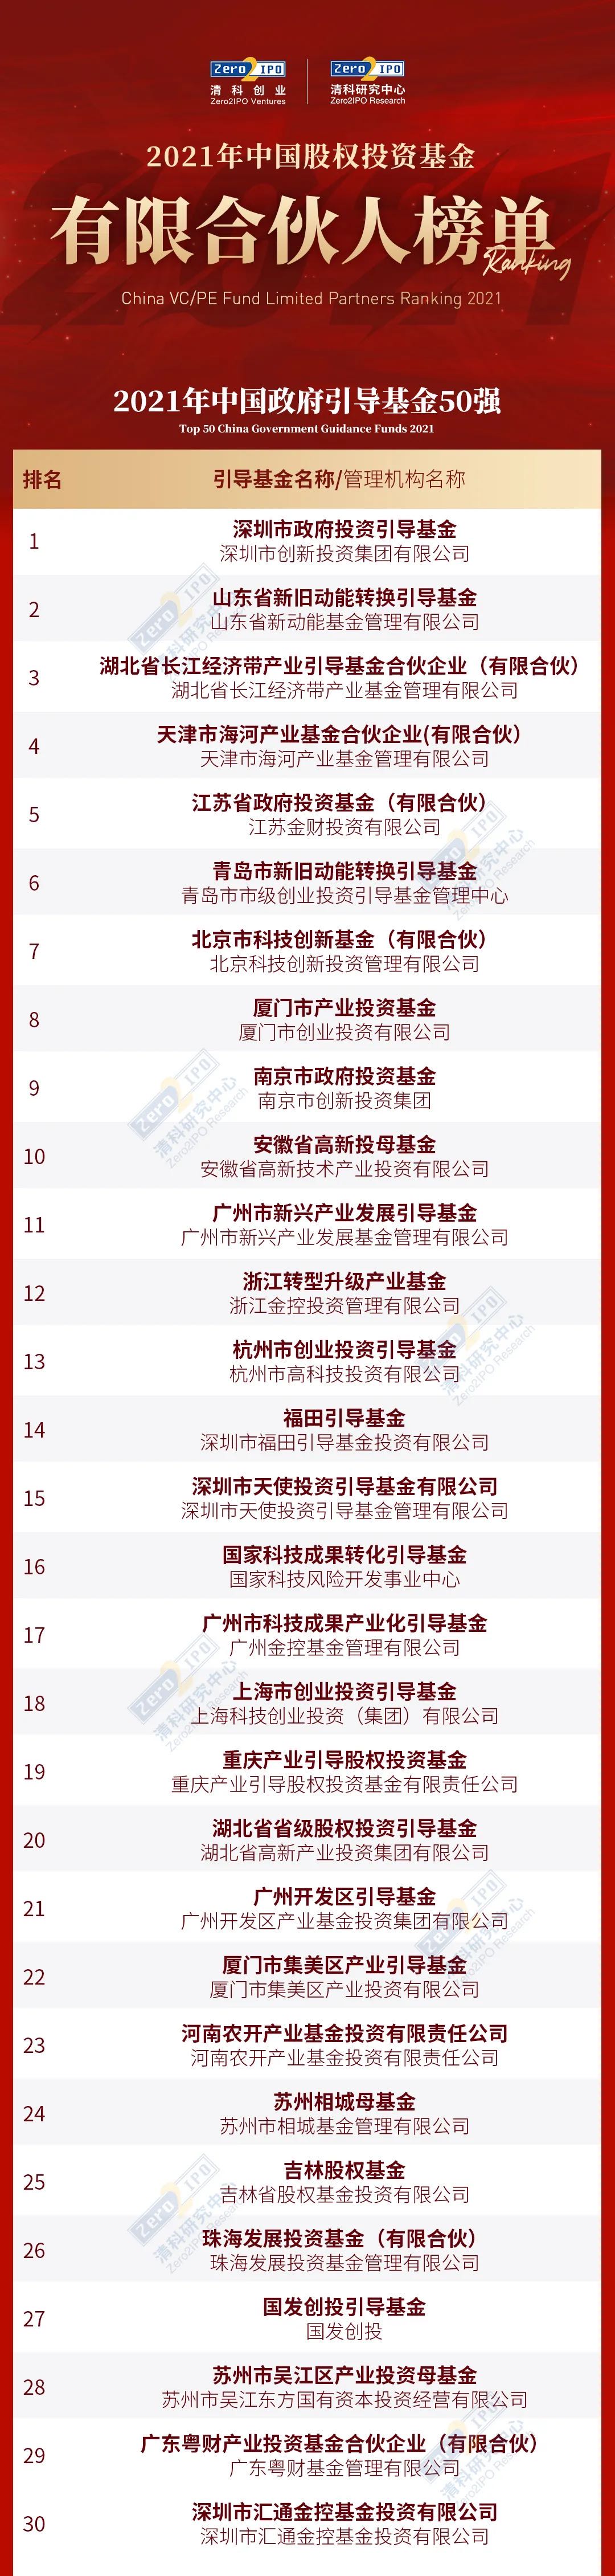 长江产业基金获评第十五届中国基金合伙人峰会“2021年中国政府引导基金50强”第三名